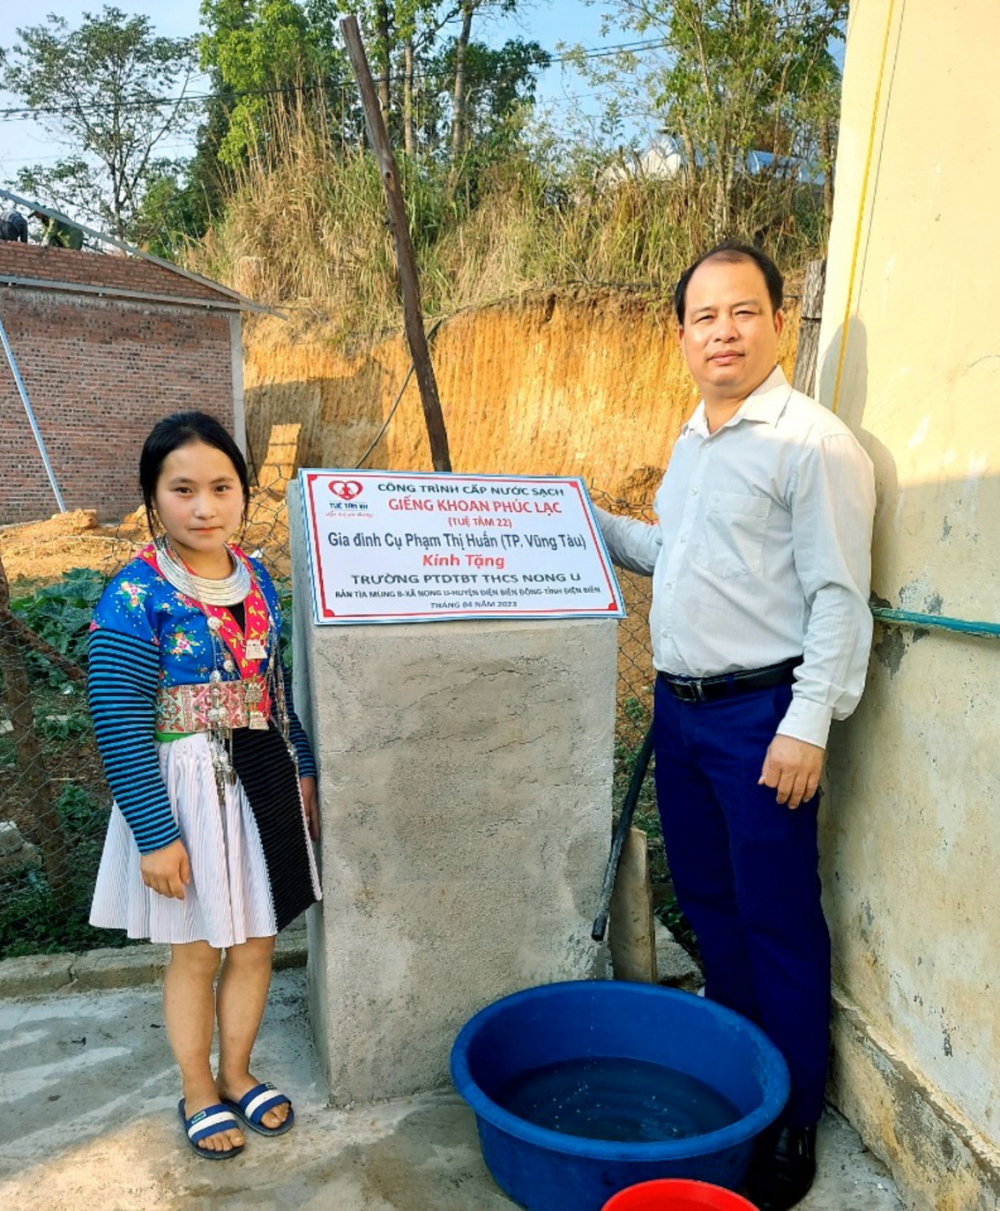 Thầy và trò Trường phổ thông dân tộc bán trú THCS Nong U bên giếng nước do 1 nhà hảo tâm ở TP Vũng Tàu tài trợ - ẢNH: T.T.